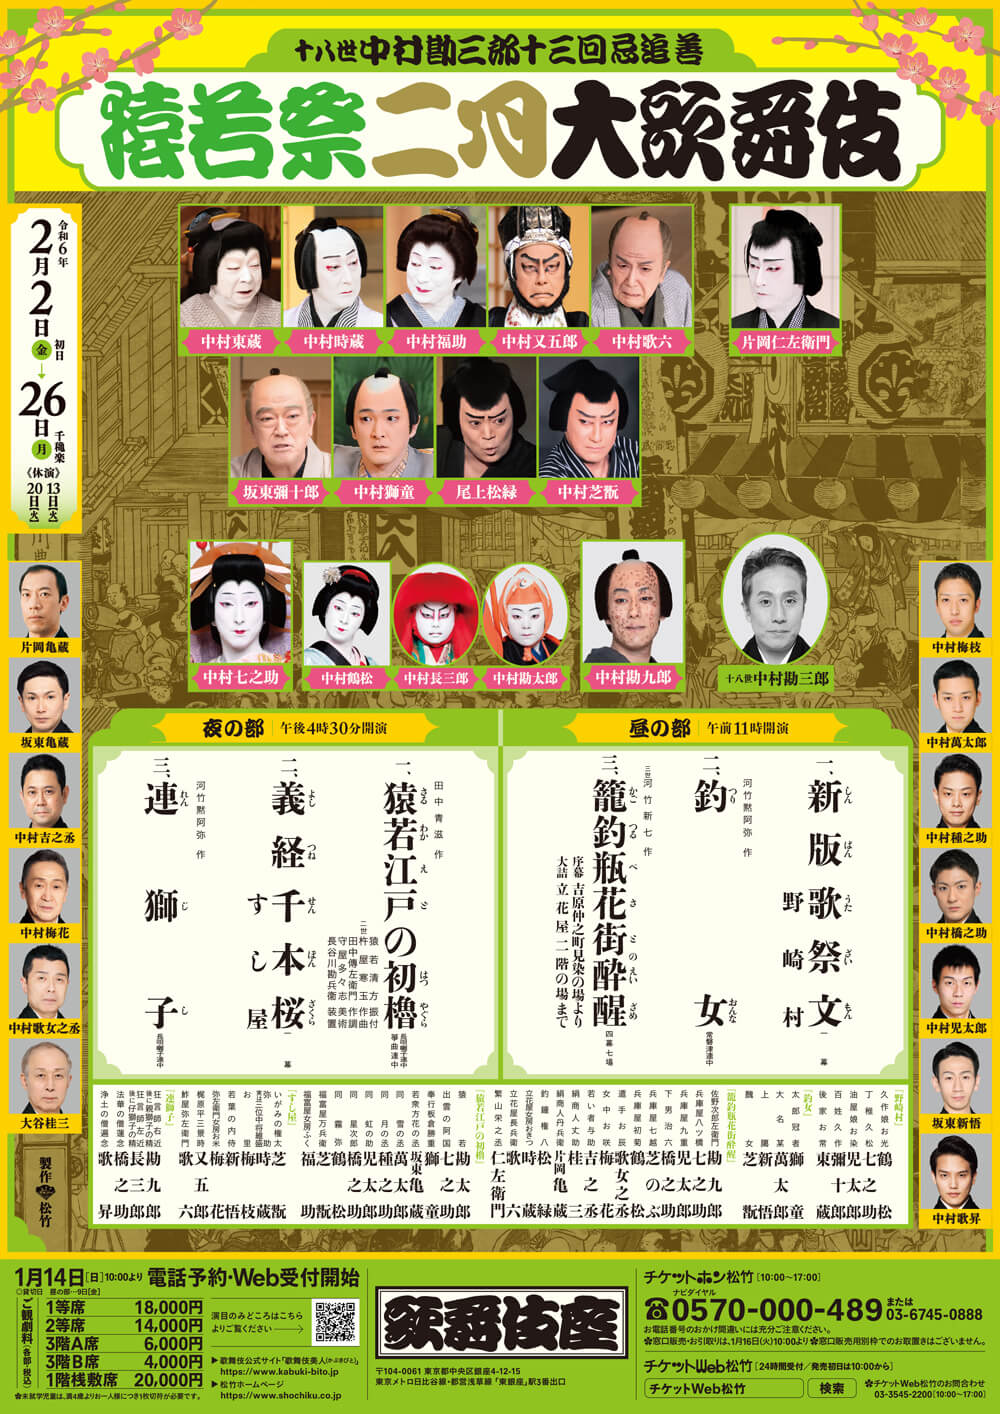 February Program at the Kabukiza Theatre